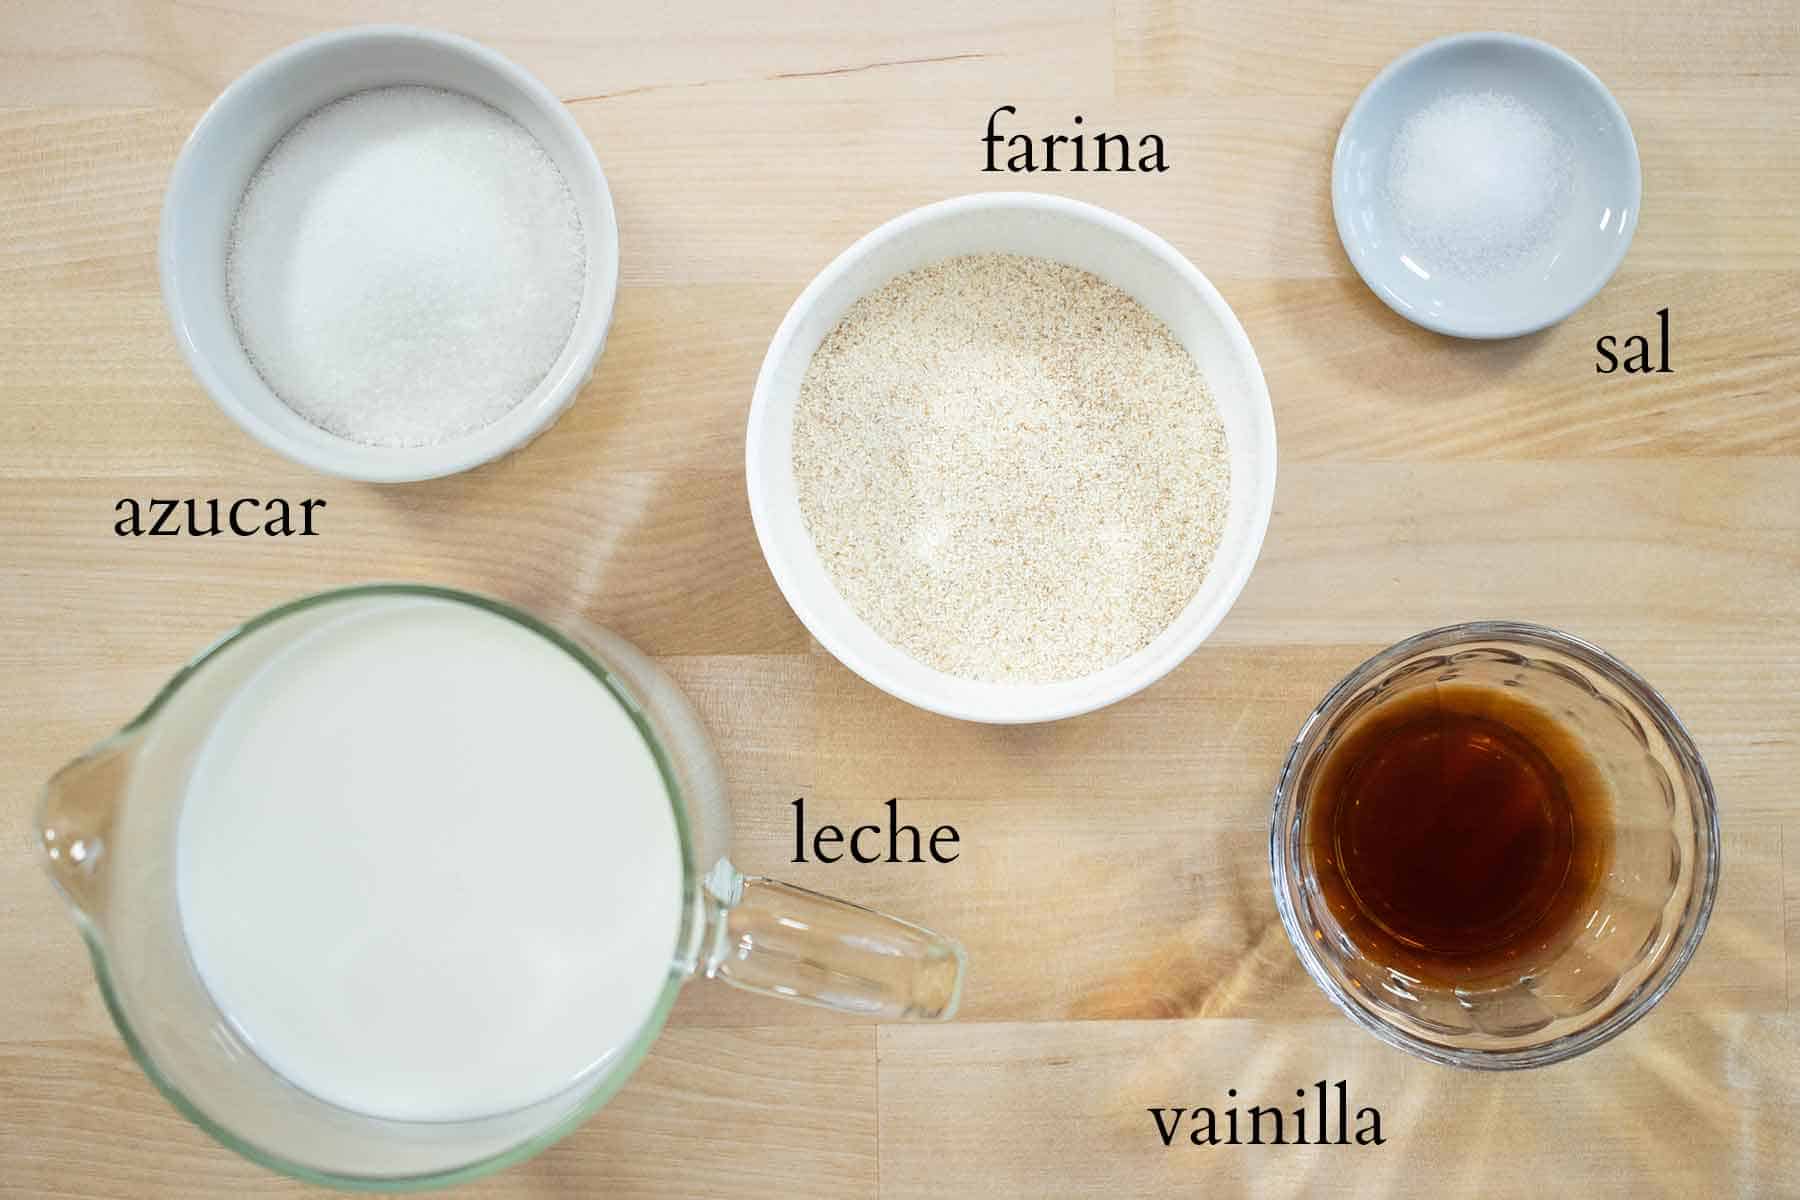 todos los ingredientes necesarios para acer una farina.